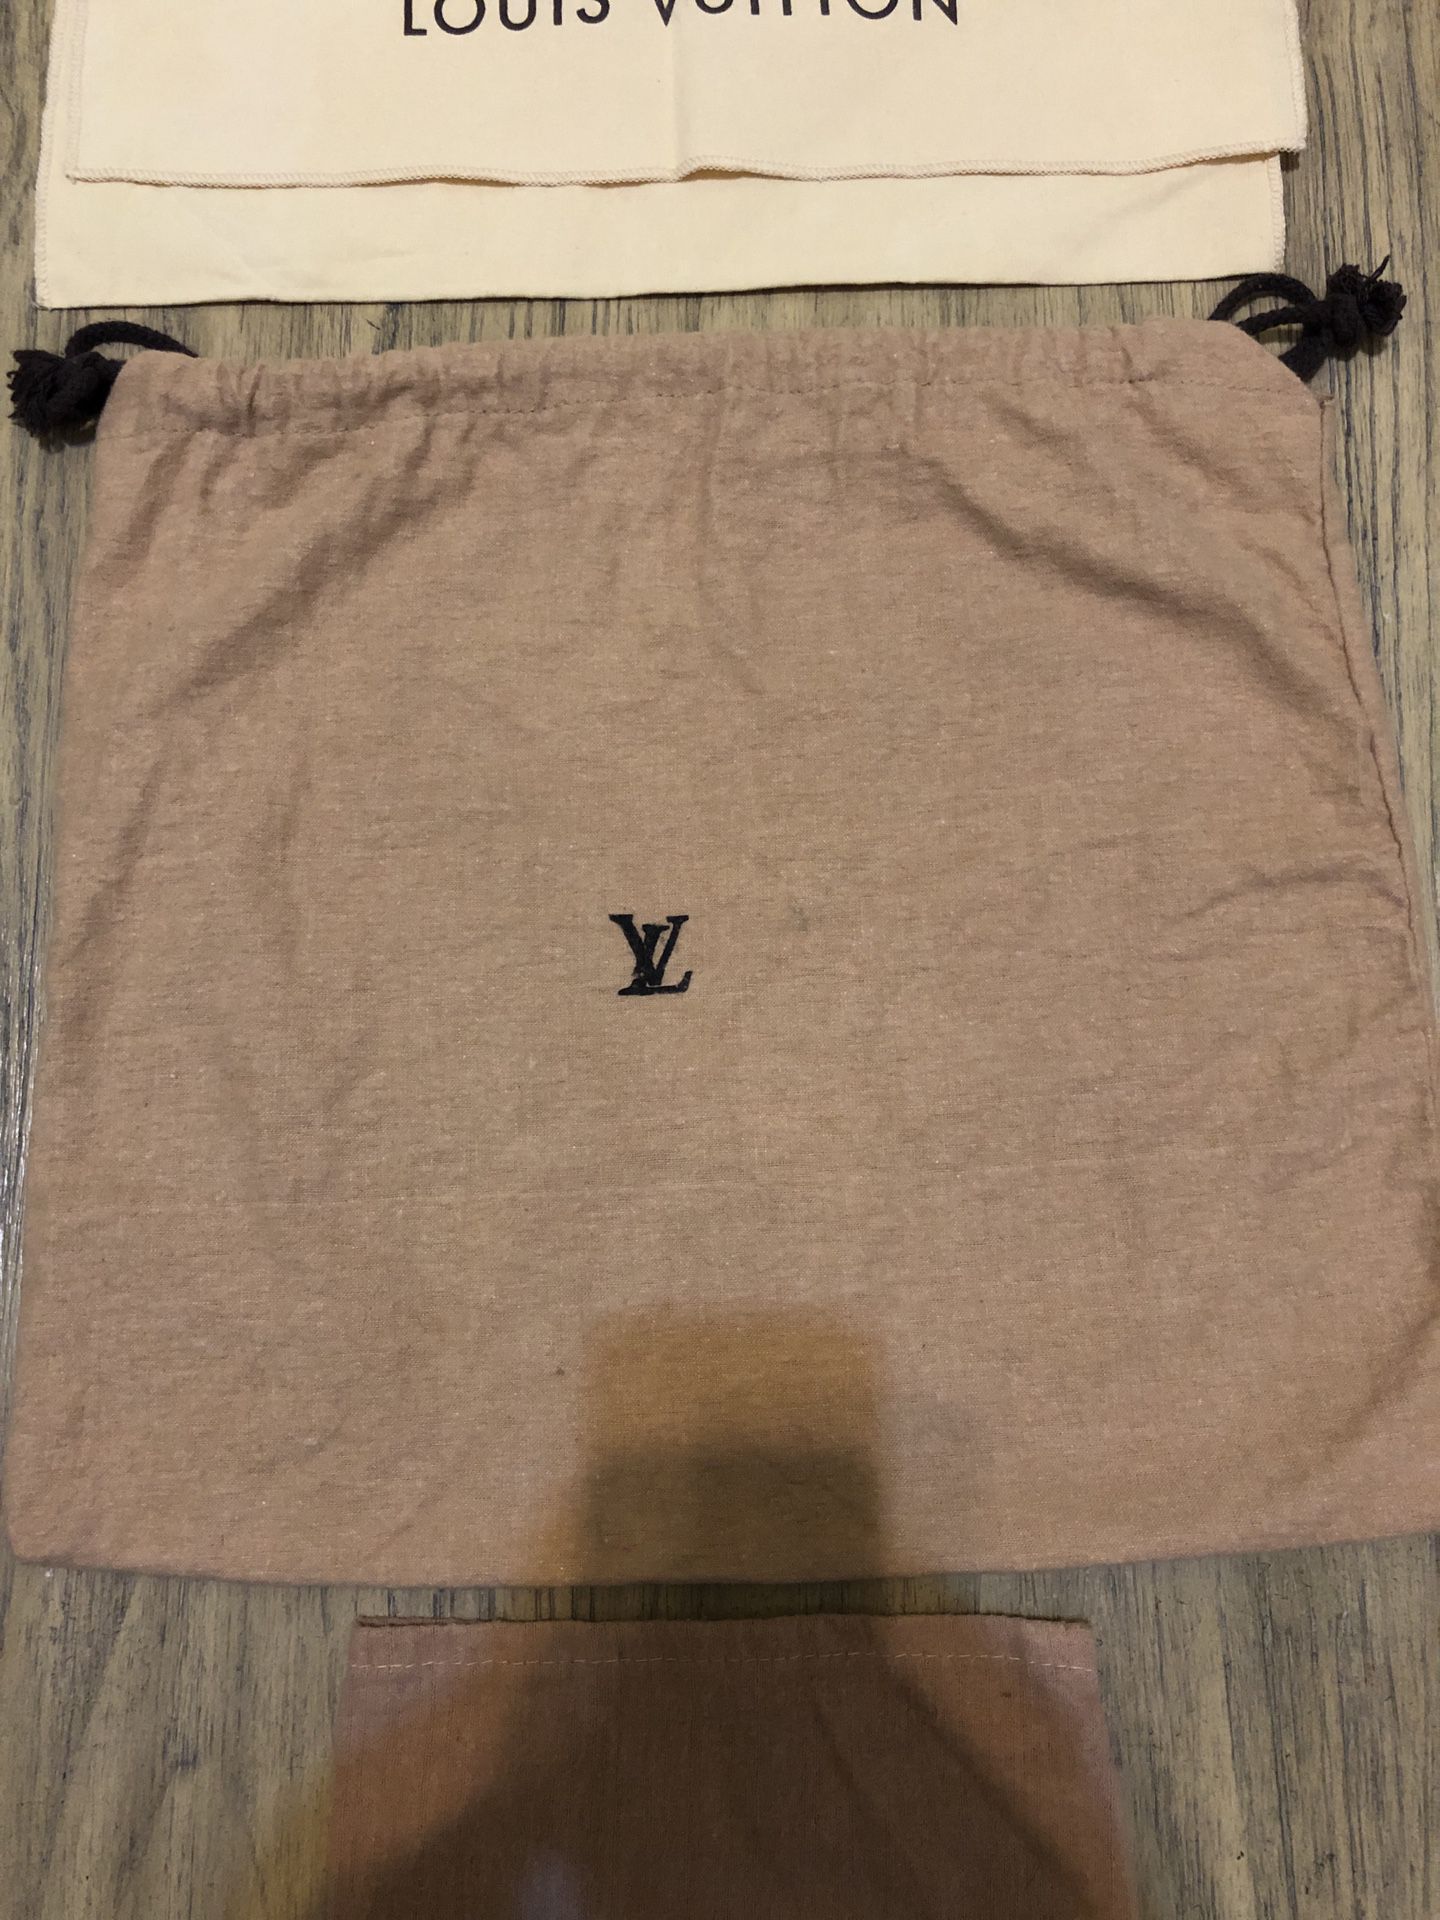 Louis Vuitton Malletiera Paris Tan Brown Dust Bag Cover 21” x 21” Square